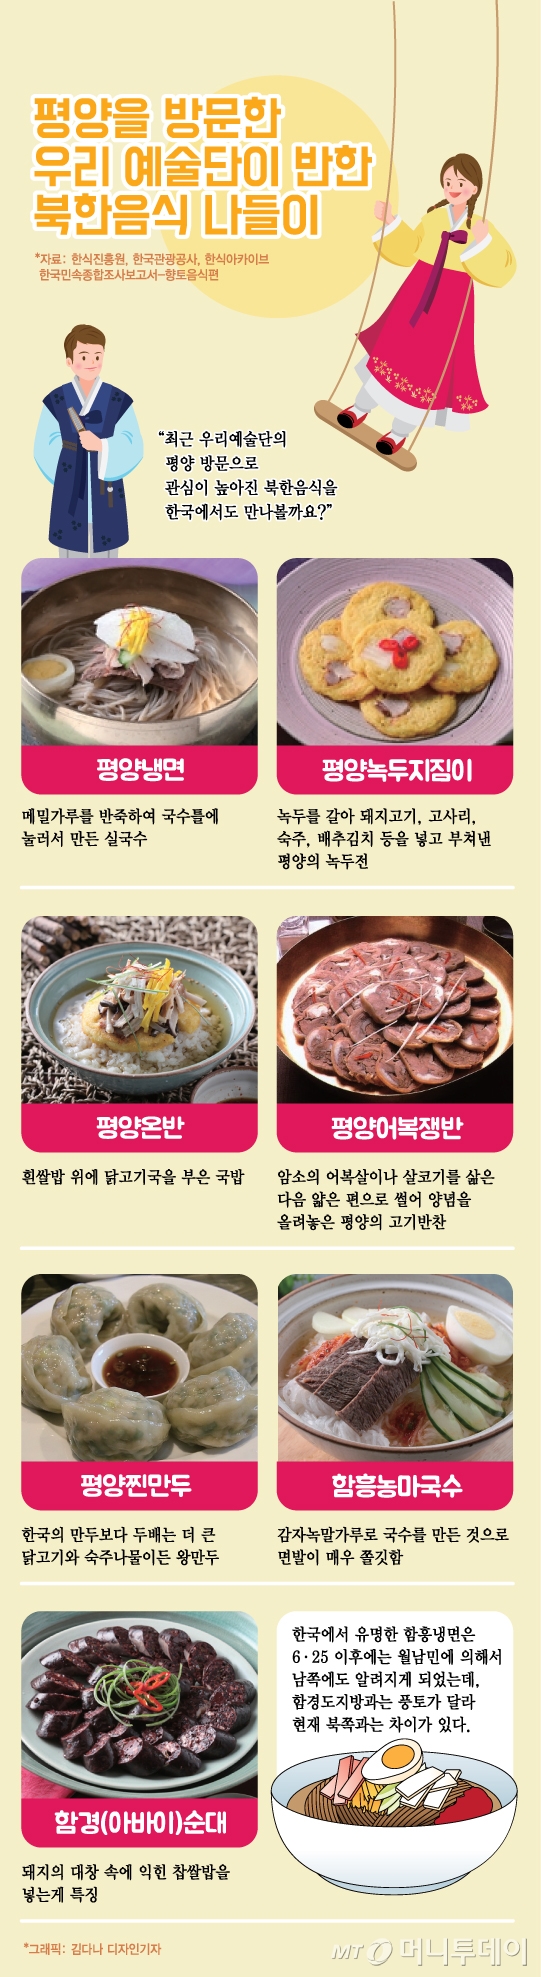 그래픽뉴스] 백지영도 엄지척 '평양냉면'… 먹고싶은 북한 대표 음식은? - 머니투데이